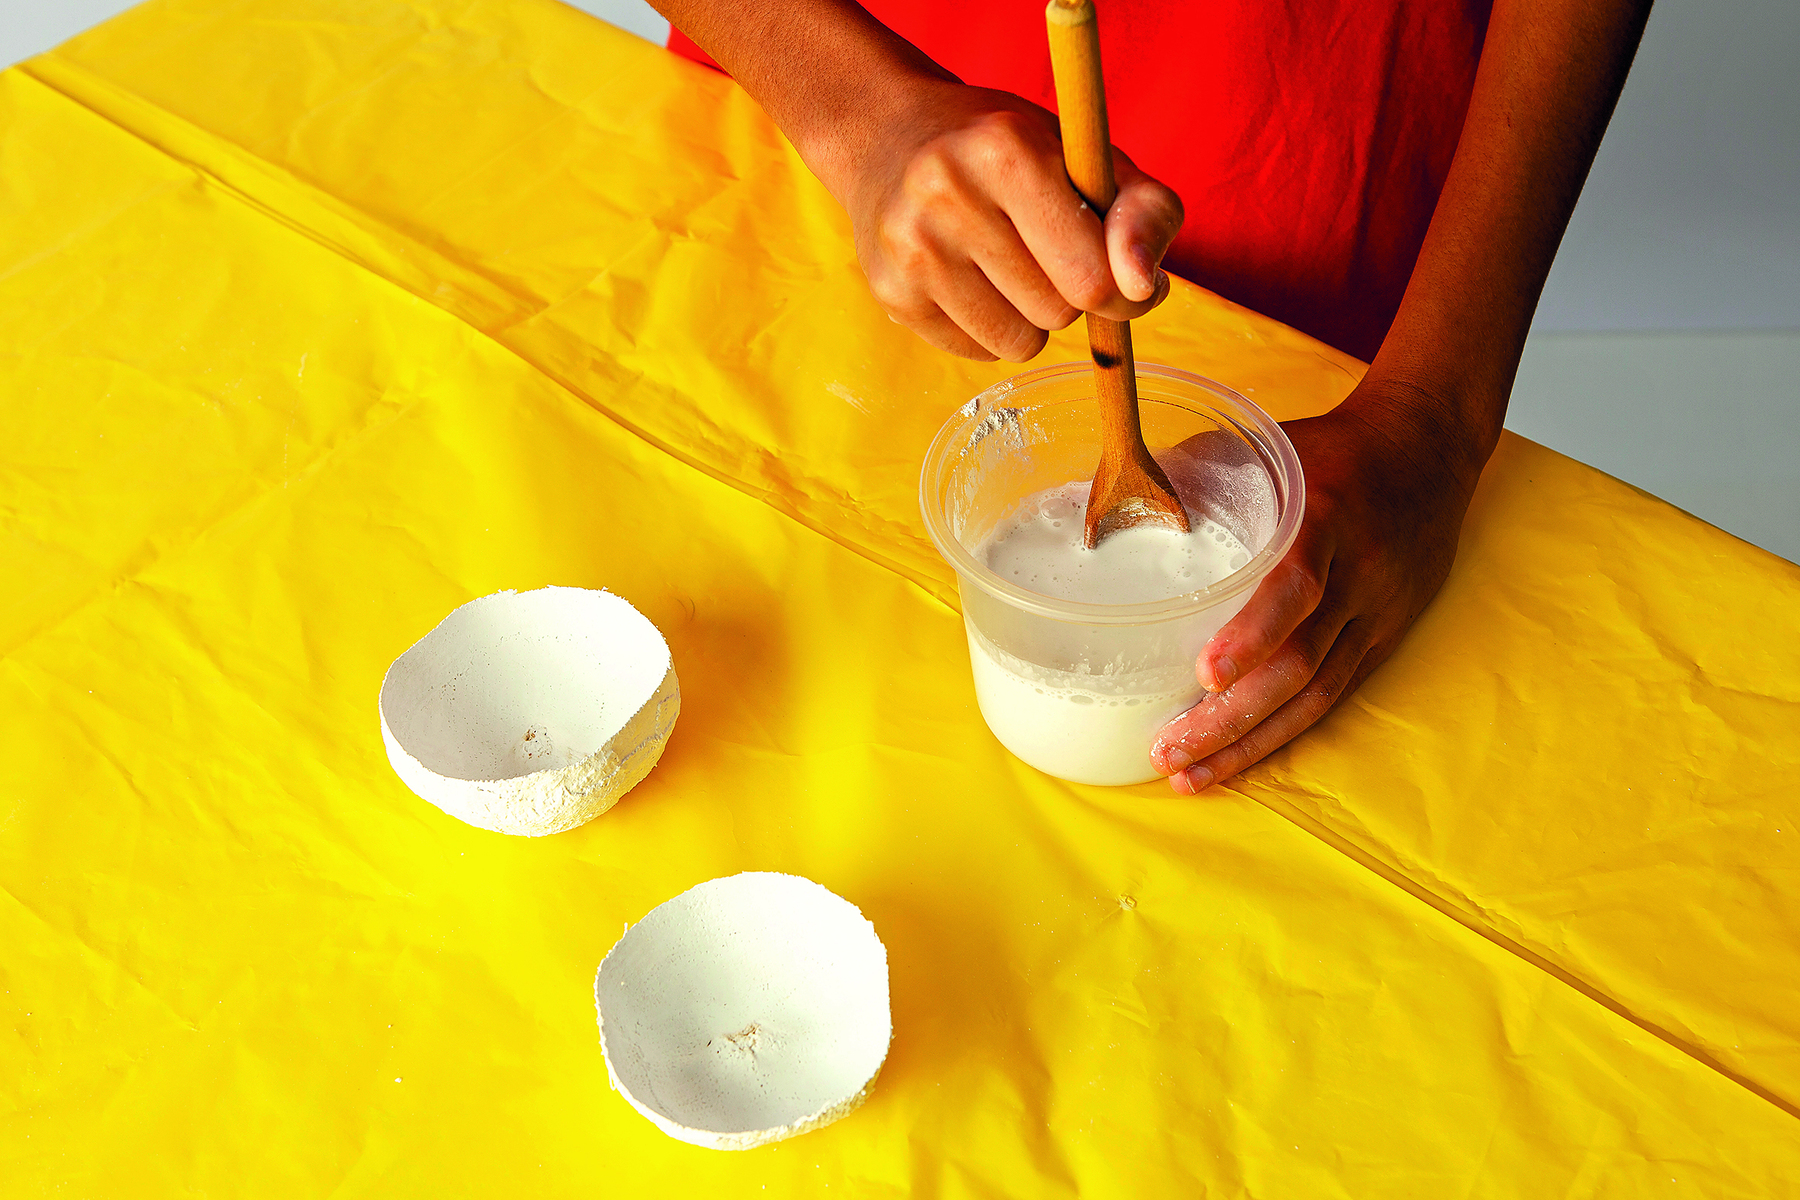 Fotografia. Detalhe de duas maõs mexendo um mistura de gesso em um pote transparente com uma colher de madeira. O pote está apoiado sobre uma mesa coberta por uma toalha amarela, onde há duas metades de um molde de gesso em formato de maçã.